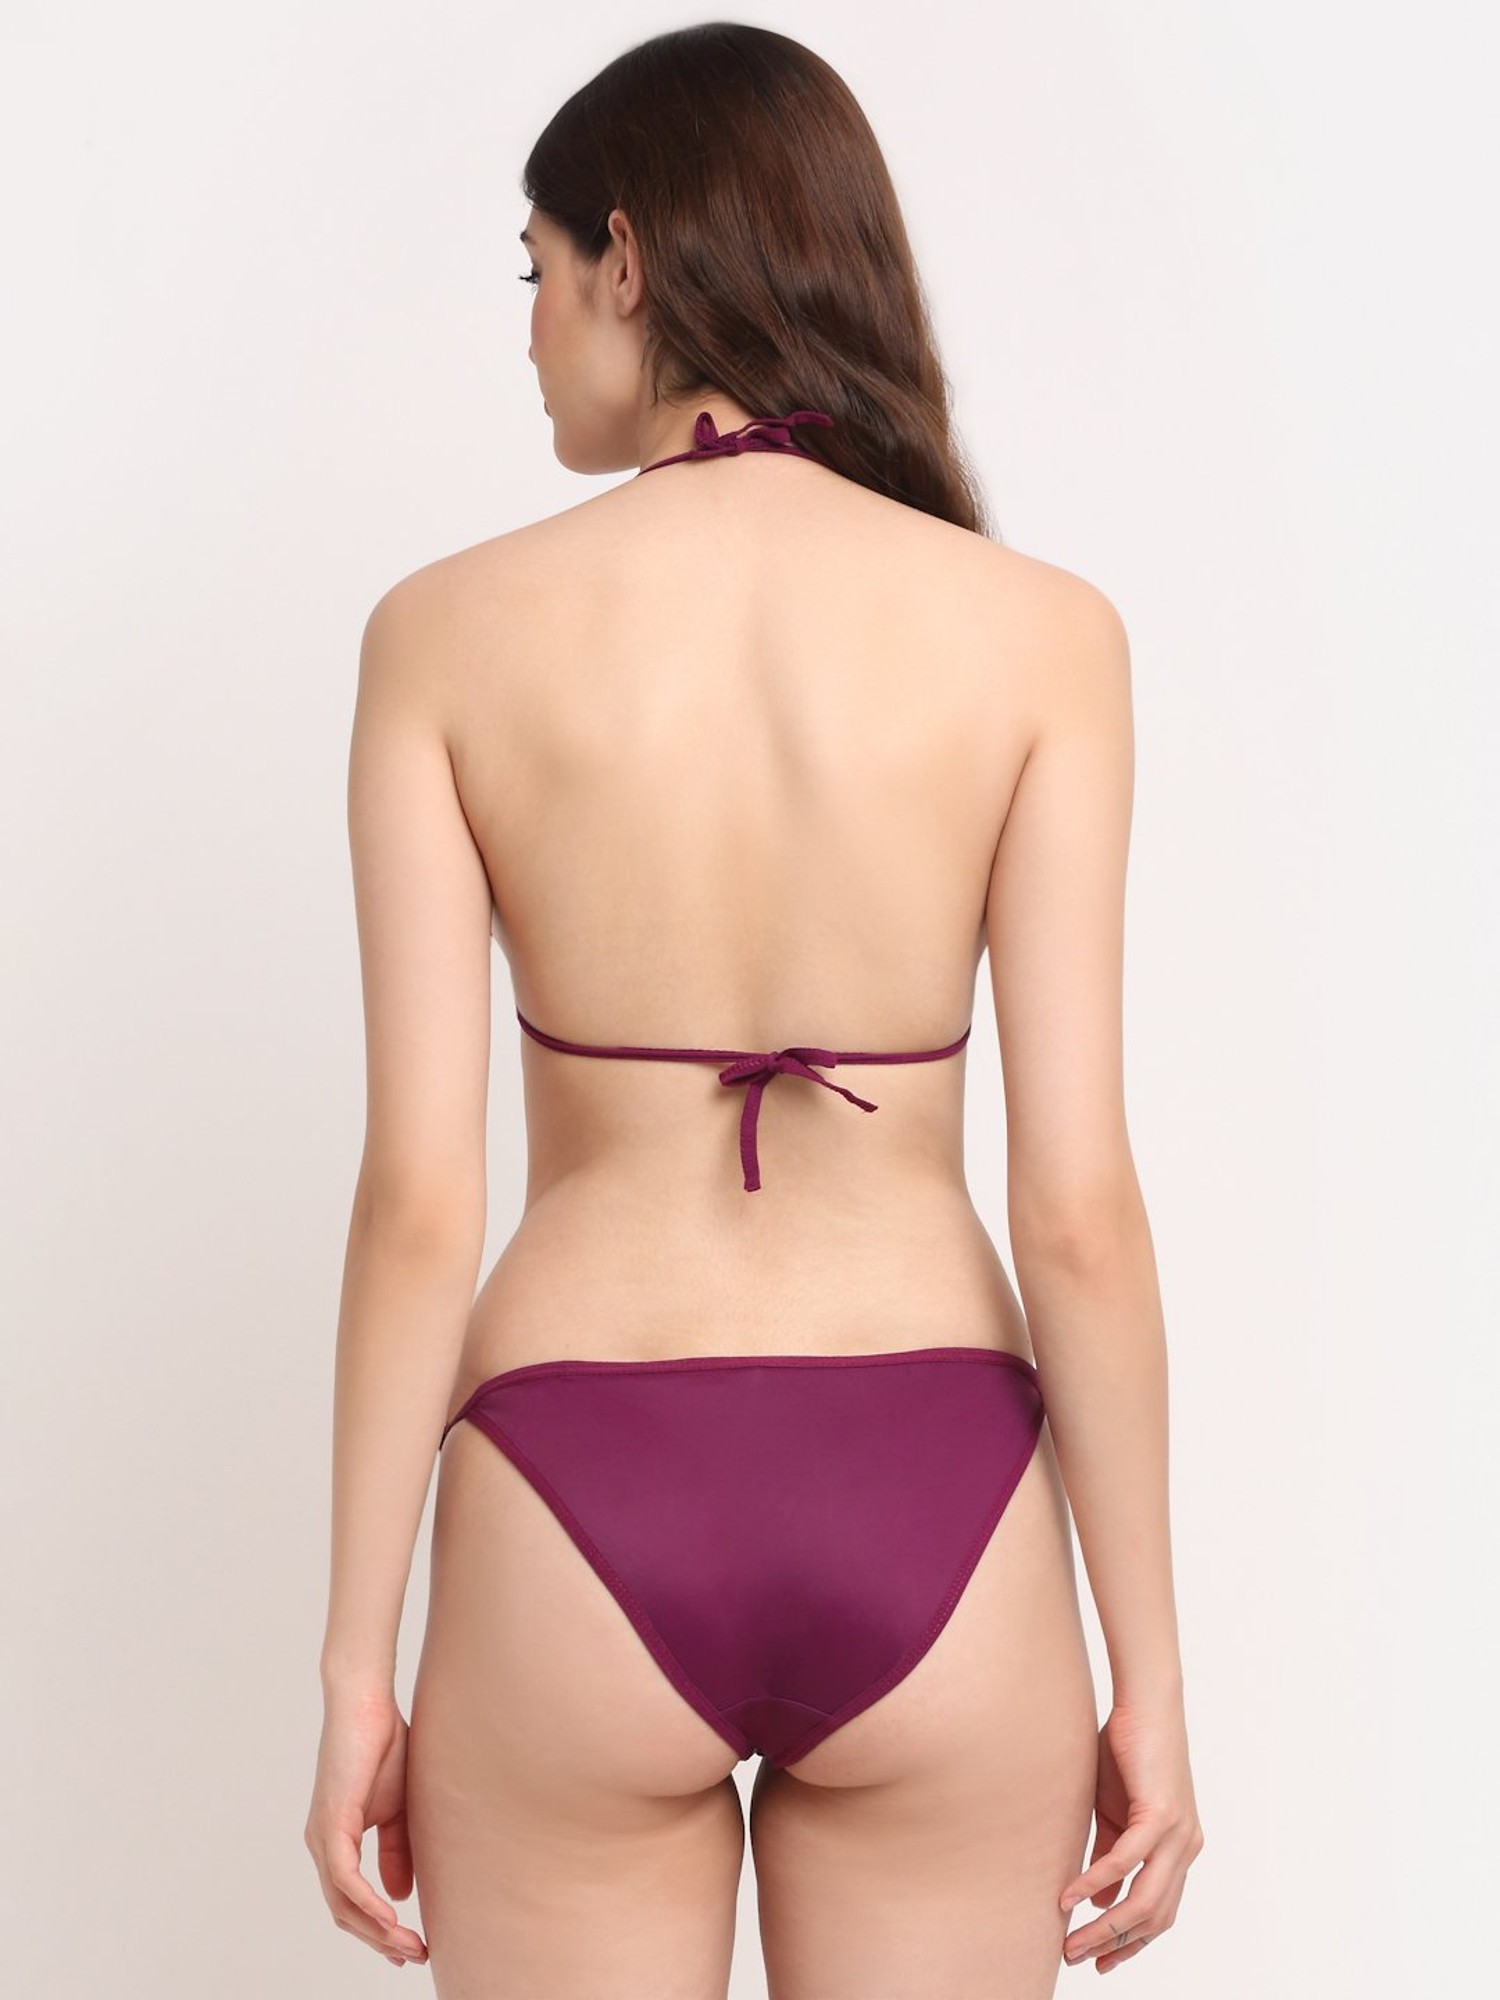 Buy Friskers Purple Bikini Set for Women's Online @ Tata CLiQ